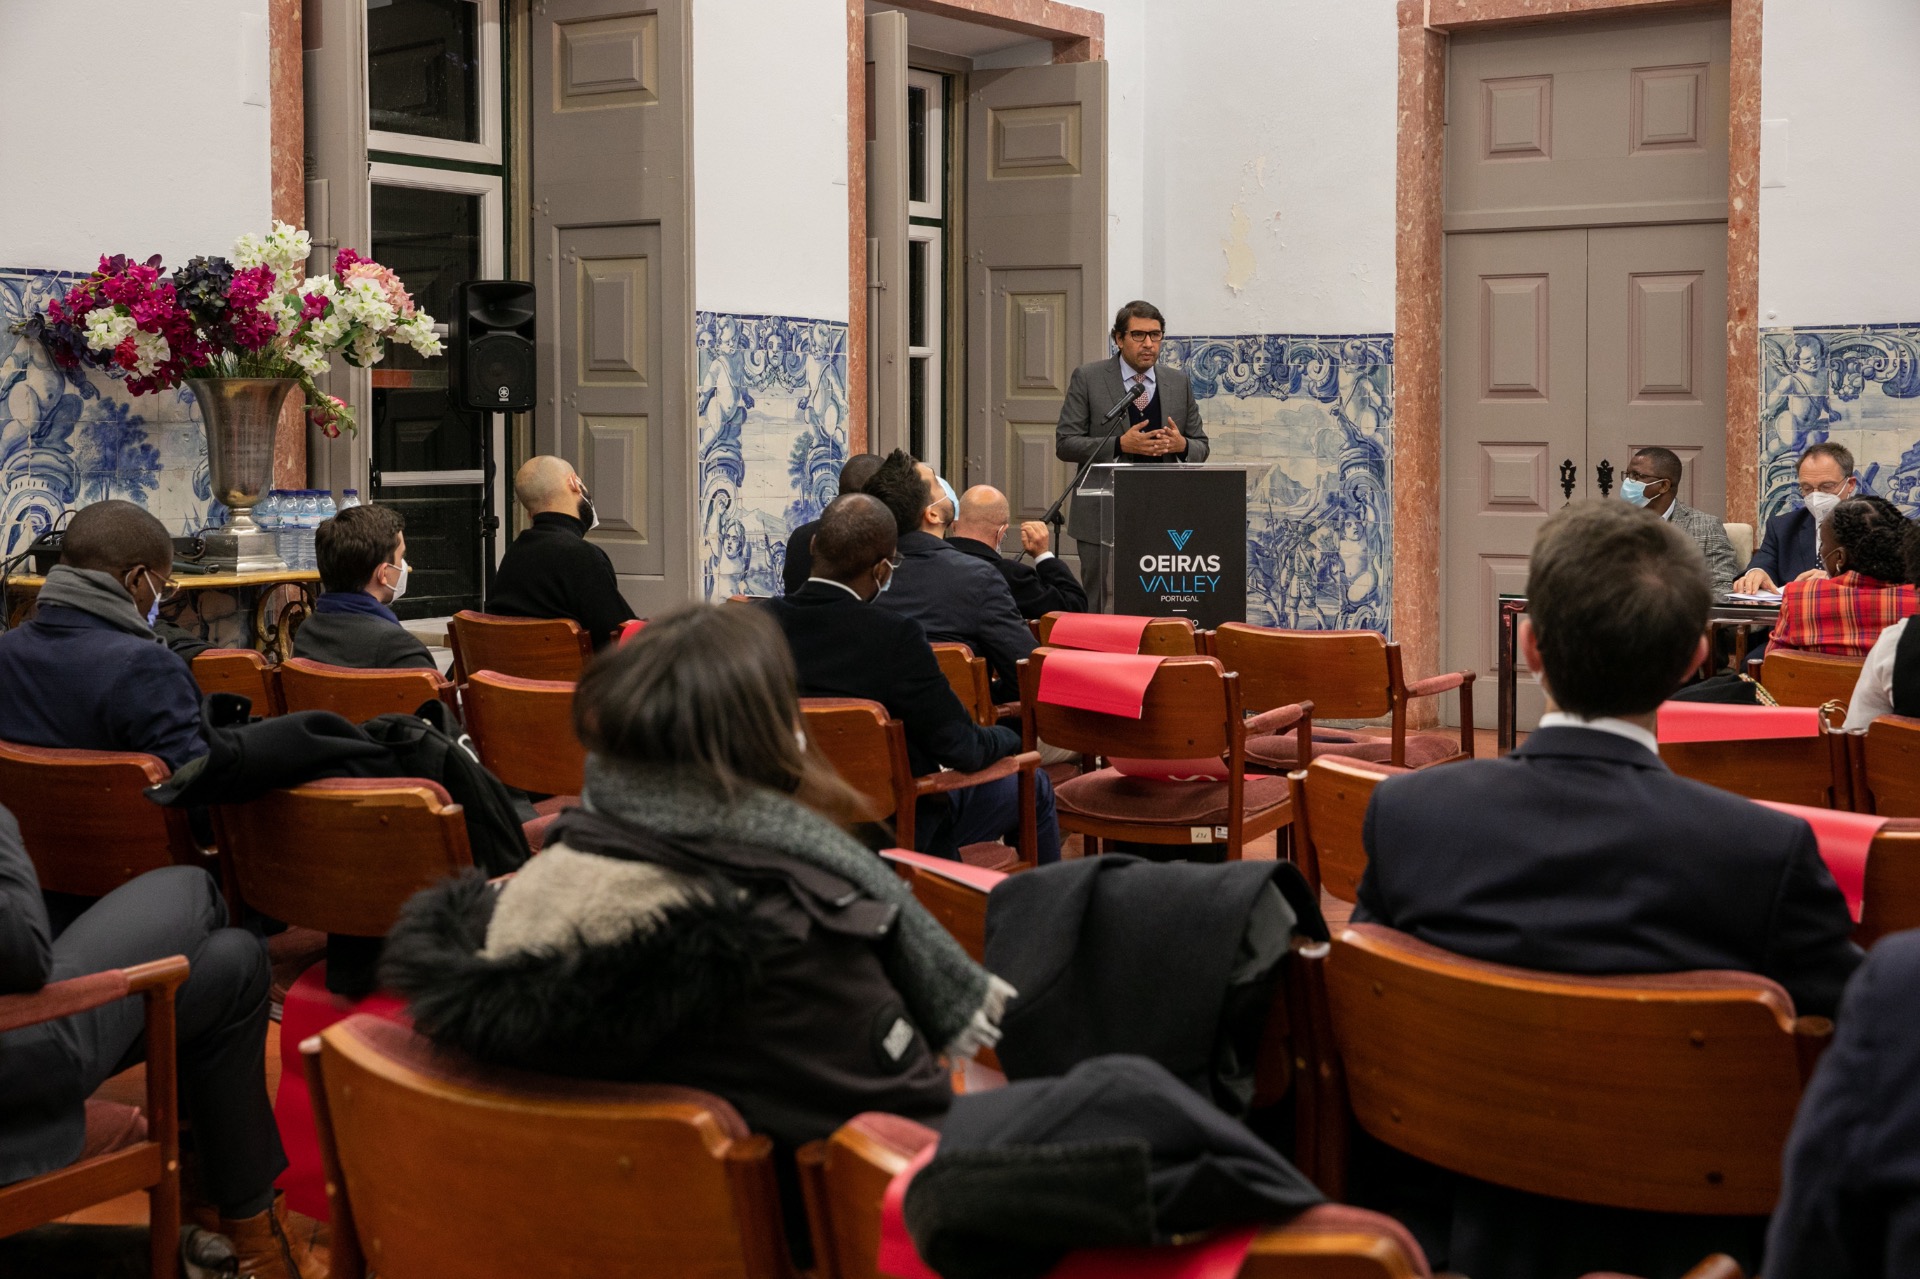 Vice-Presidente na sua intervenção no Salao Nobre do Palácio Marquês de Pombal no âmbito deste encontro jurídico